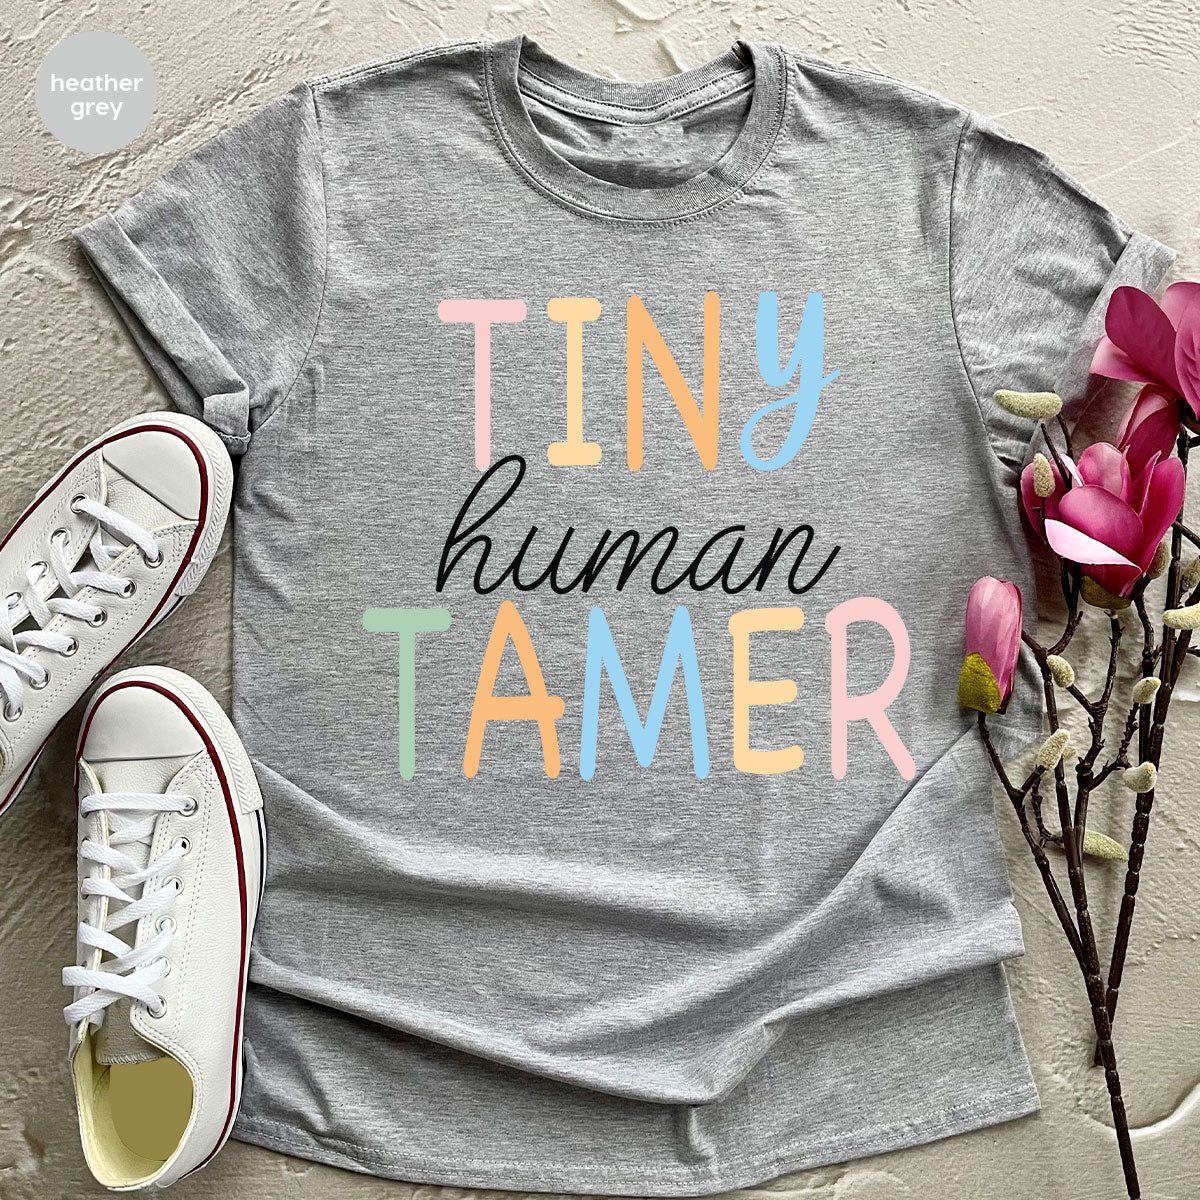 Teacher Shirt, Tiny Human Tamer, Kindergarten Teacher, Preschool Teacher, First Day of School, Back to School T-Shirt, Gift for Teacher